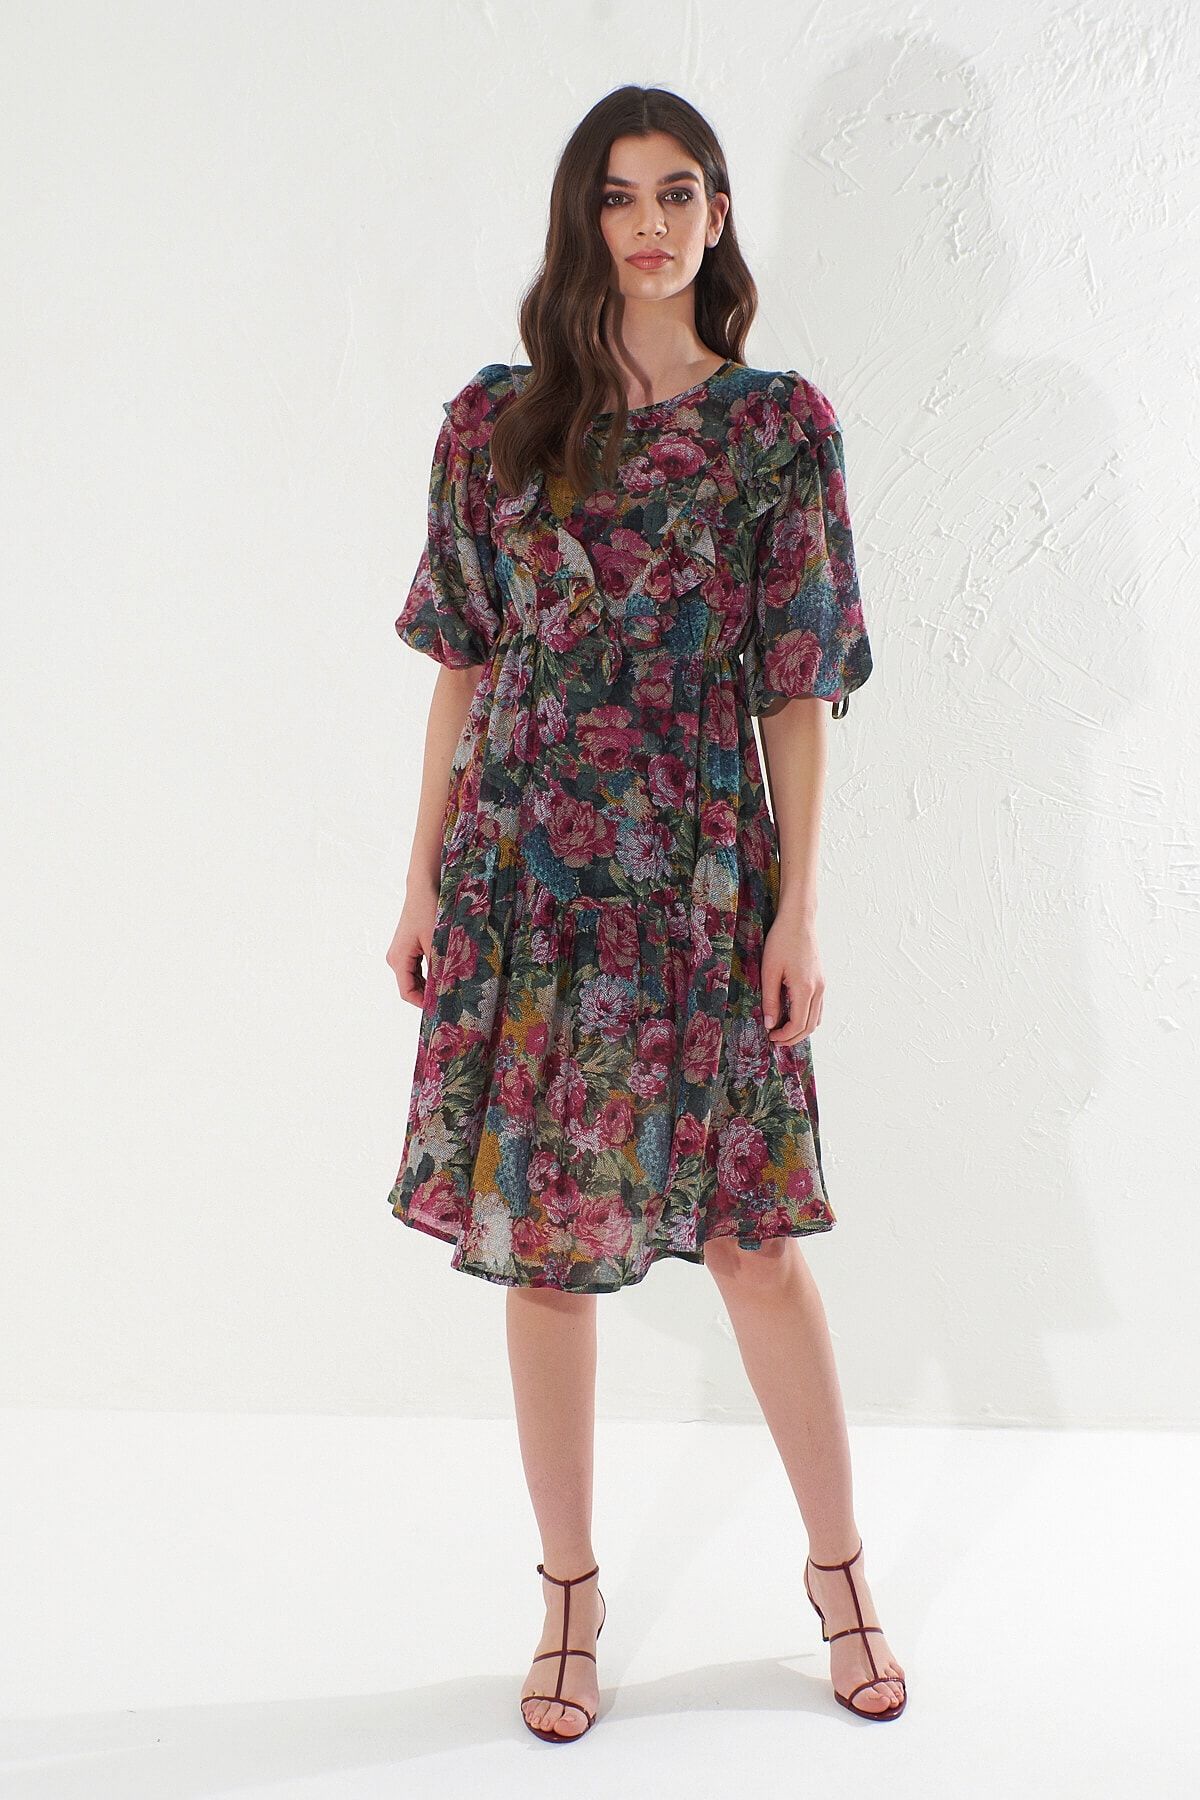 Hanna's Kadın Çiçekli Fırfır Ve Büzgü Detaylı Emprime Desenli Dokuma Elbise